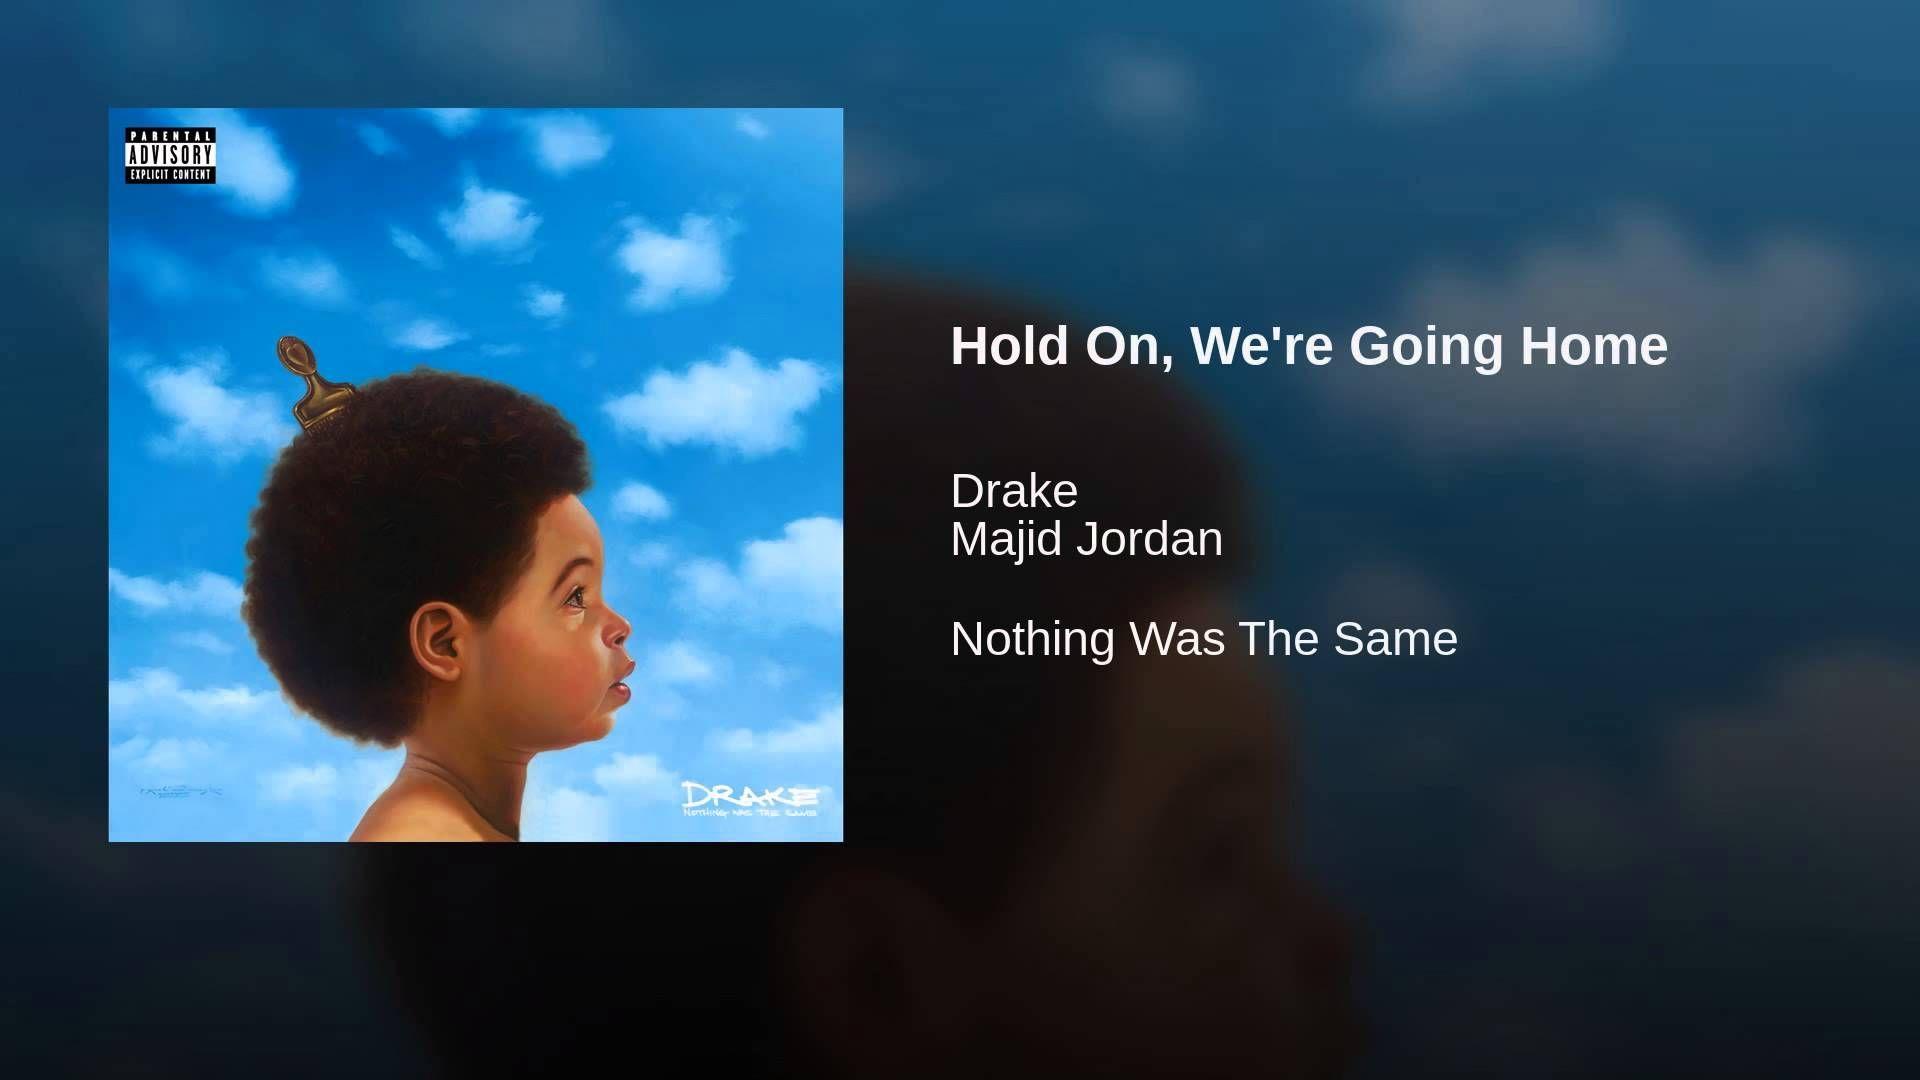 Nothing the same. Drake nothing was the same. Majid Jordan, Drake. Drake hold on we're going Home. Hold on, we're going Home Drake, Majid Jordan.